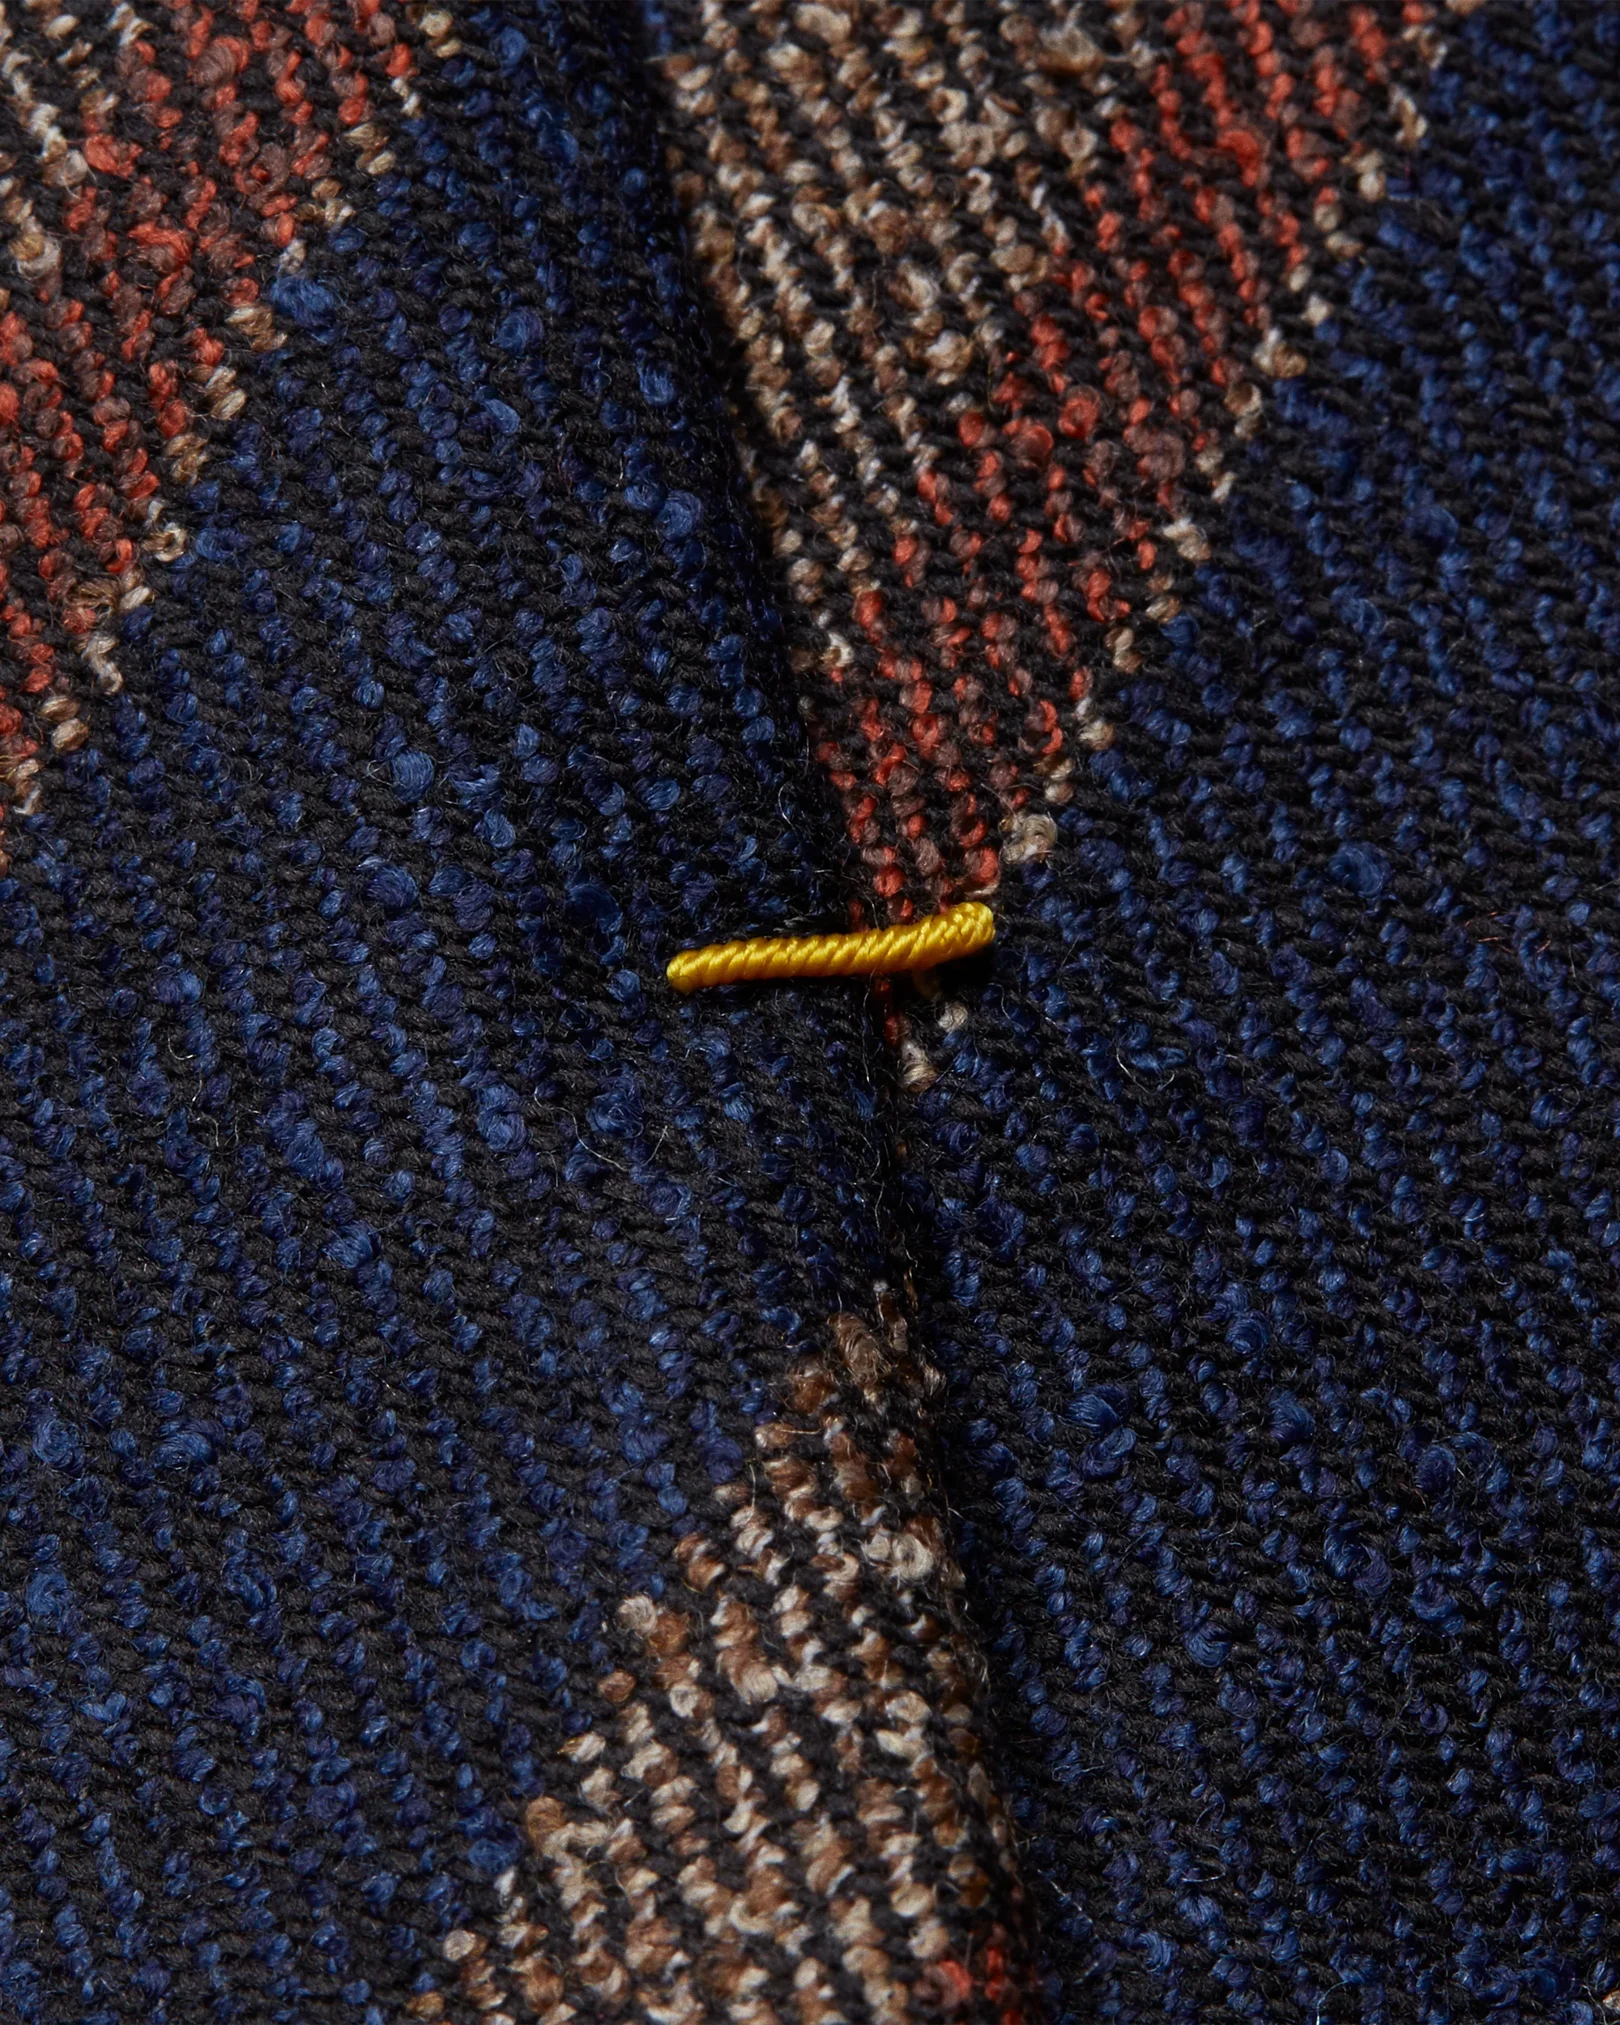 Eton - dark blue striped wool blend tie